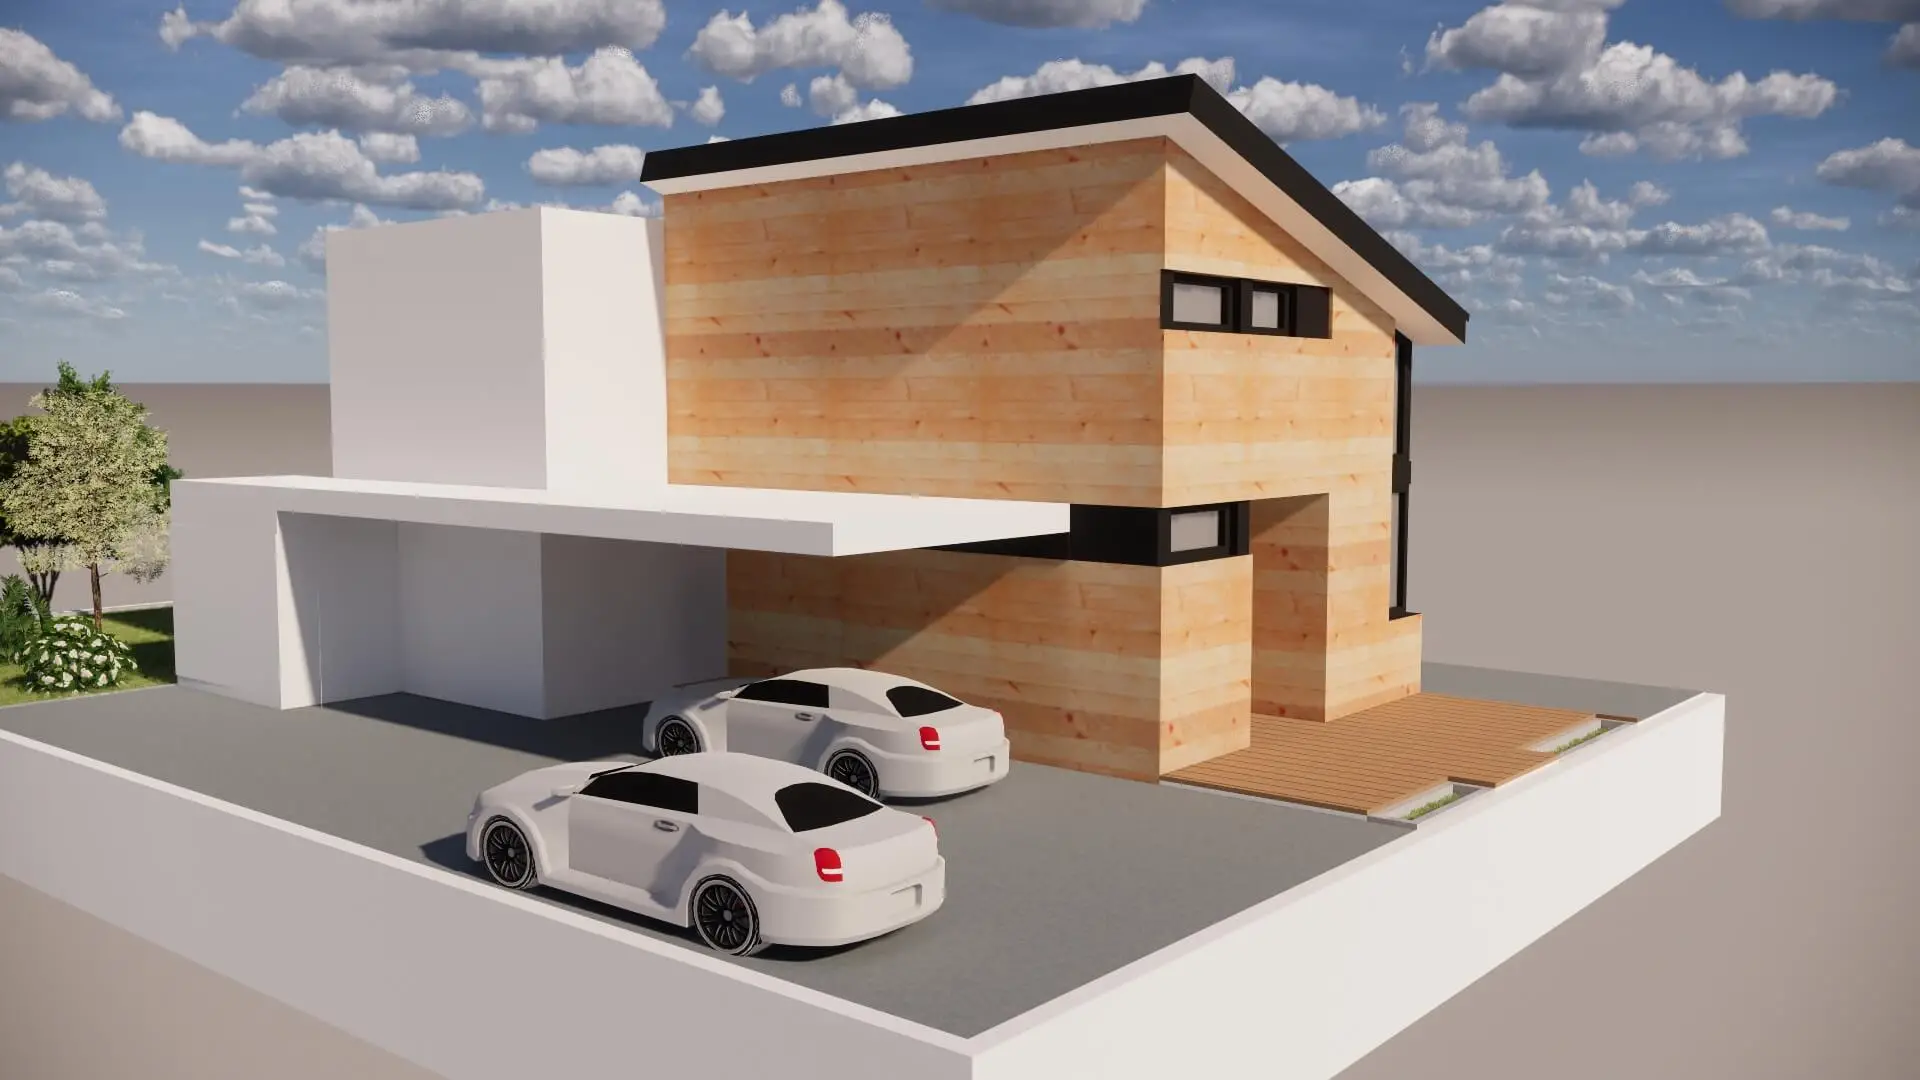 Proyecto de 1 vivienda unifamiliar aislada y garaje en residencial vereda